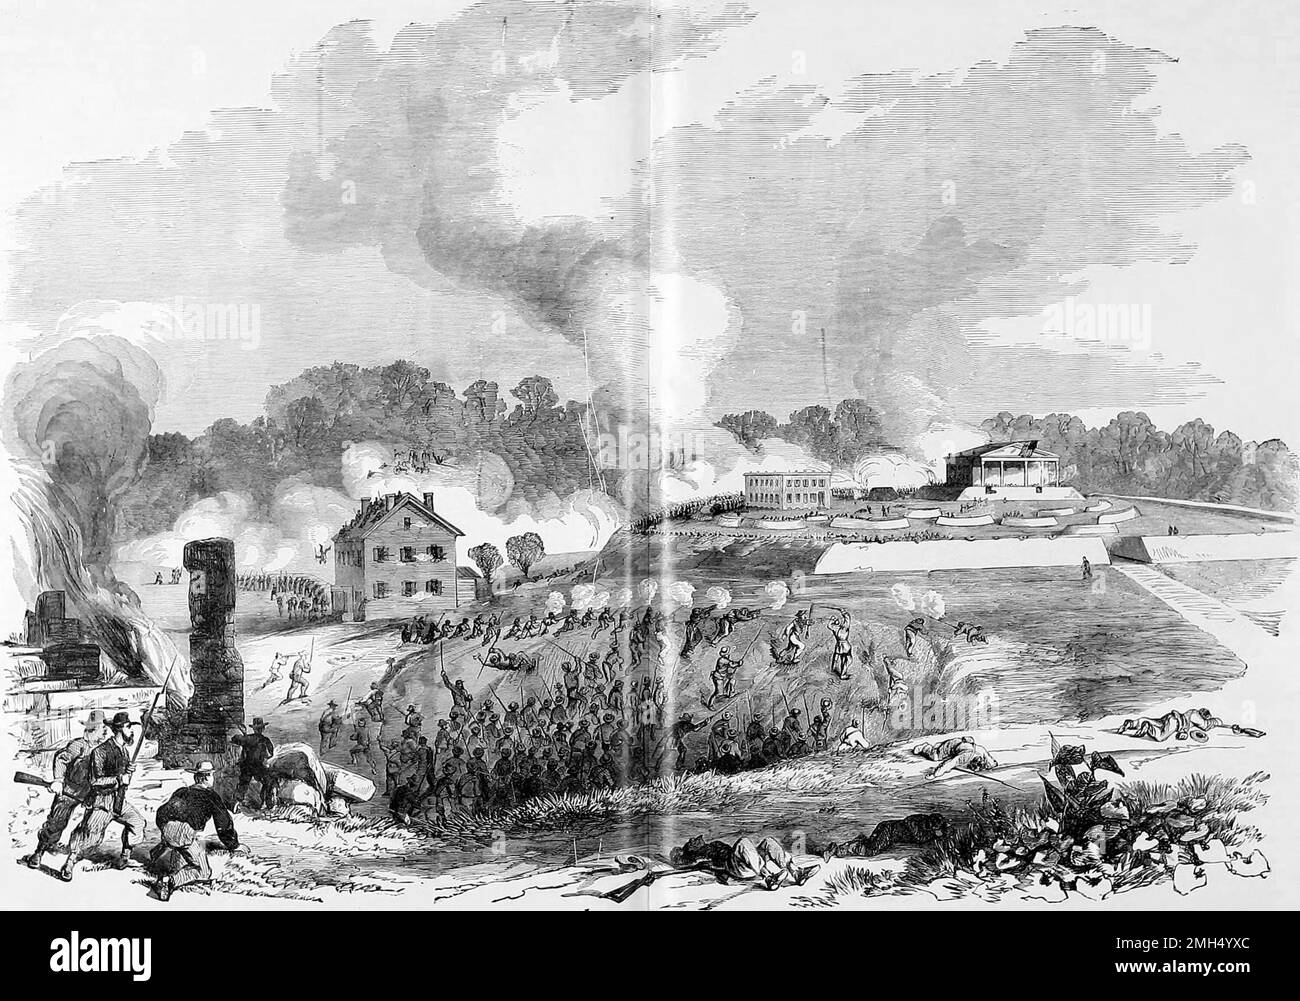 El asedio de Lexington, también conocido como la Primera Batalla de Lexington o la Batalla de las balas de cáñamo, fue una batalla en la Guerra Civil Americana del 13 al 20 de septiembre de 1861. Fue ganado por las fuerzas confederadas bajo el General Sterling Price. Foto de stock